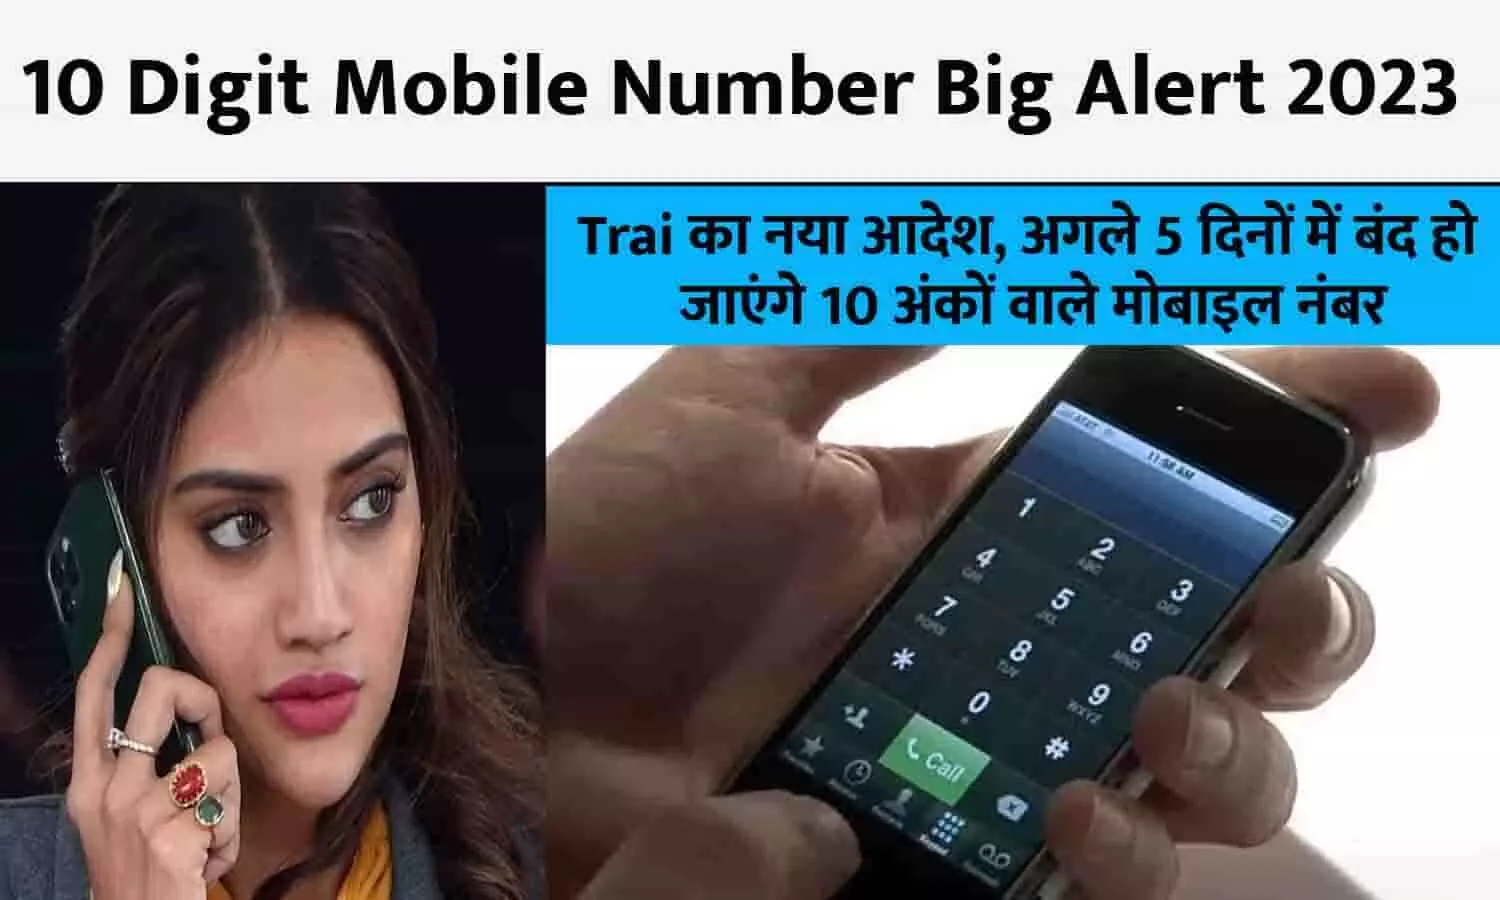 10 Digit Mobile Number Big Alert 2023: Trai का नया आदेश, अगले 5 दिनों में बंद हो जाएंगे 10 अंकों वाले मोबाइल नंबर, तुरंत हो जाएं सावधान